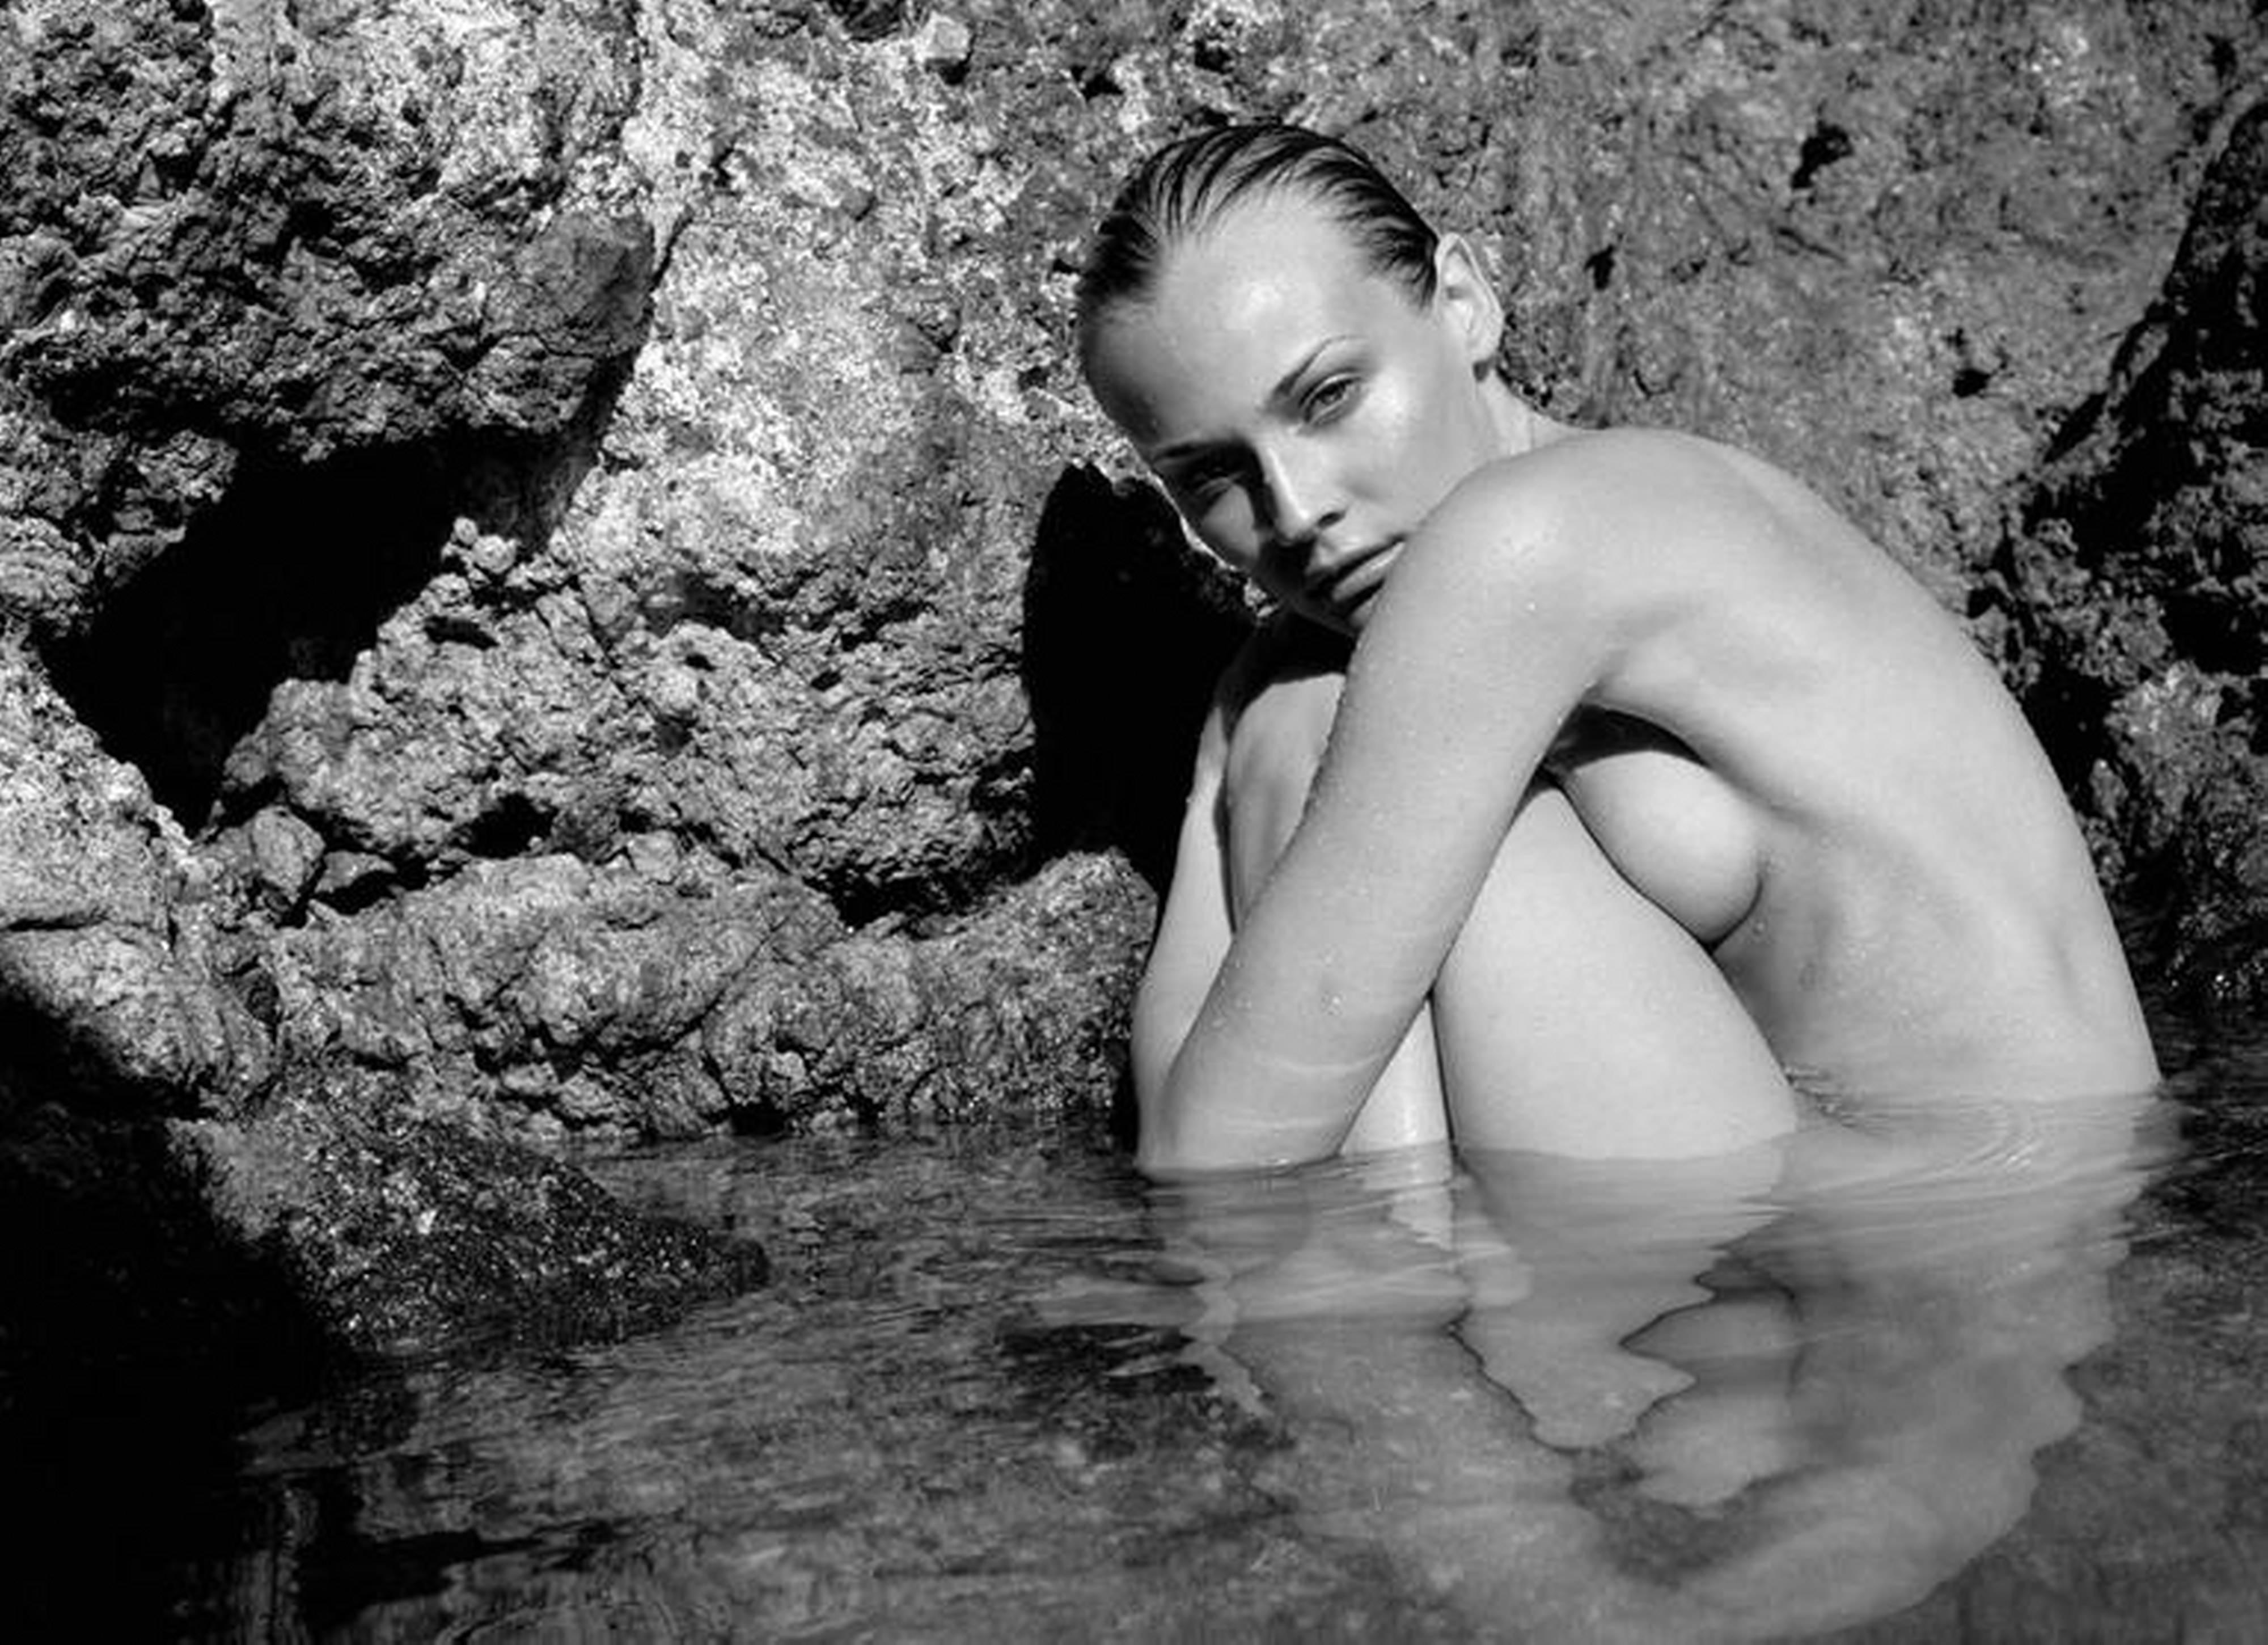 Diane Kruger flaunts figure in topless image